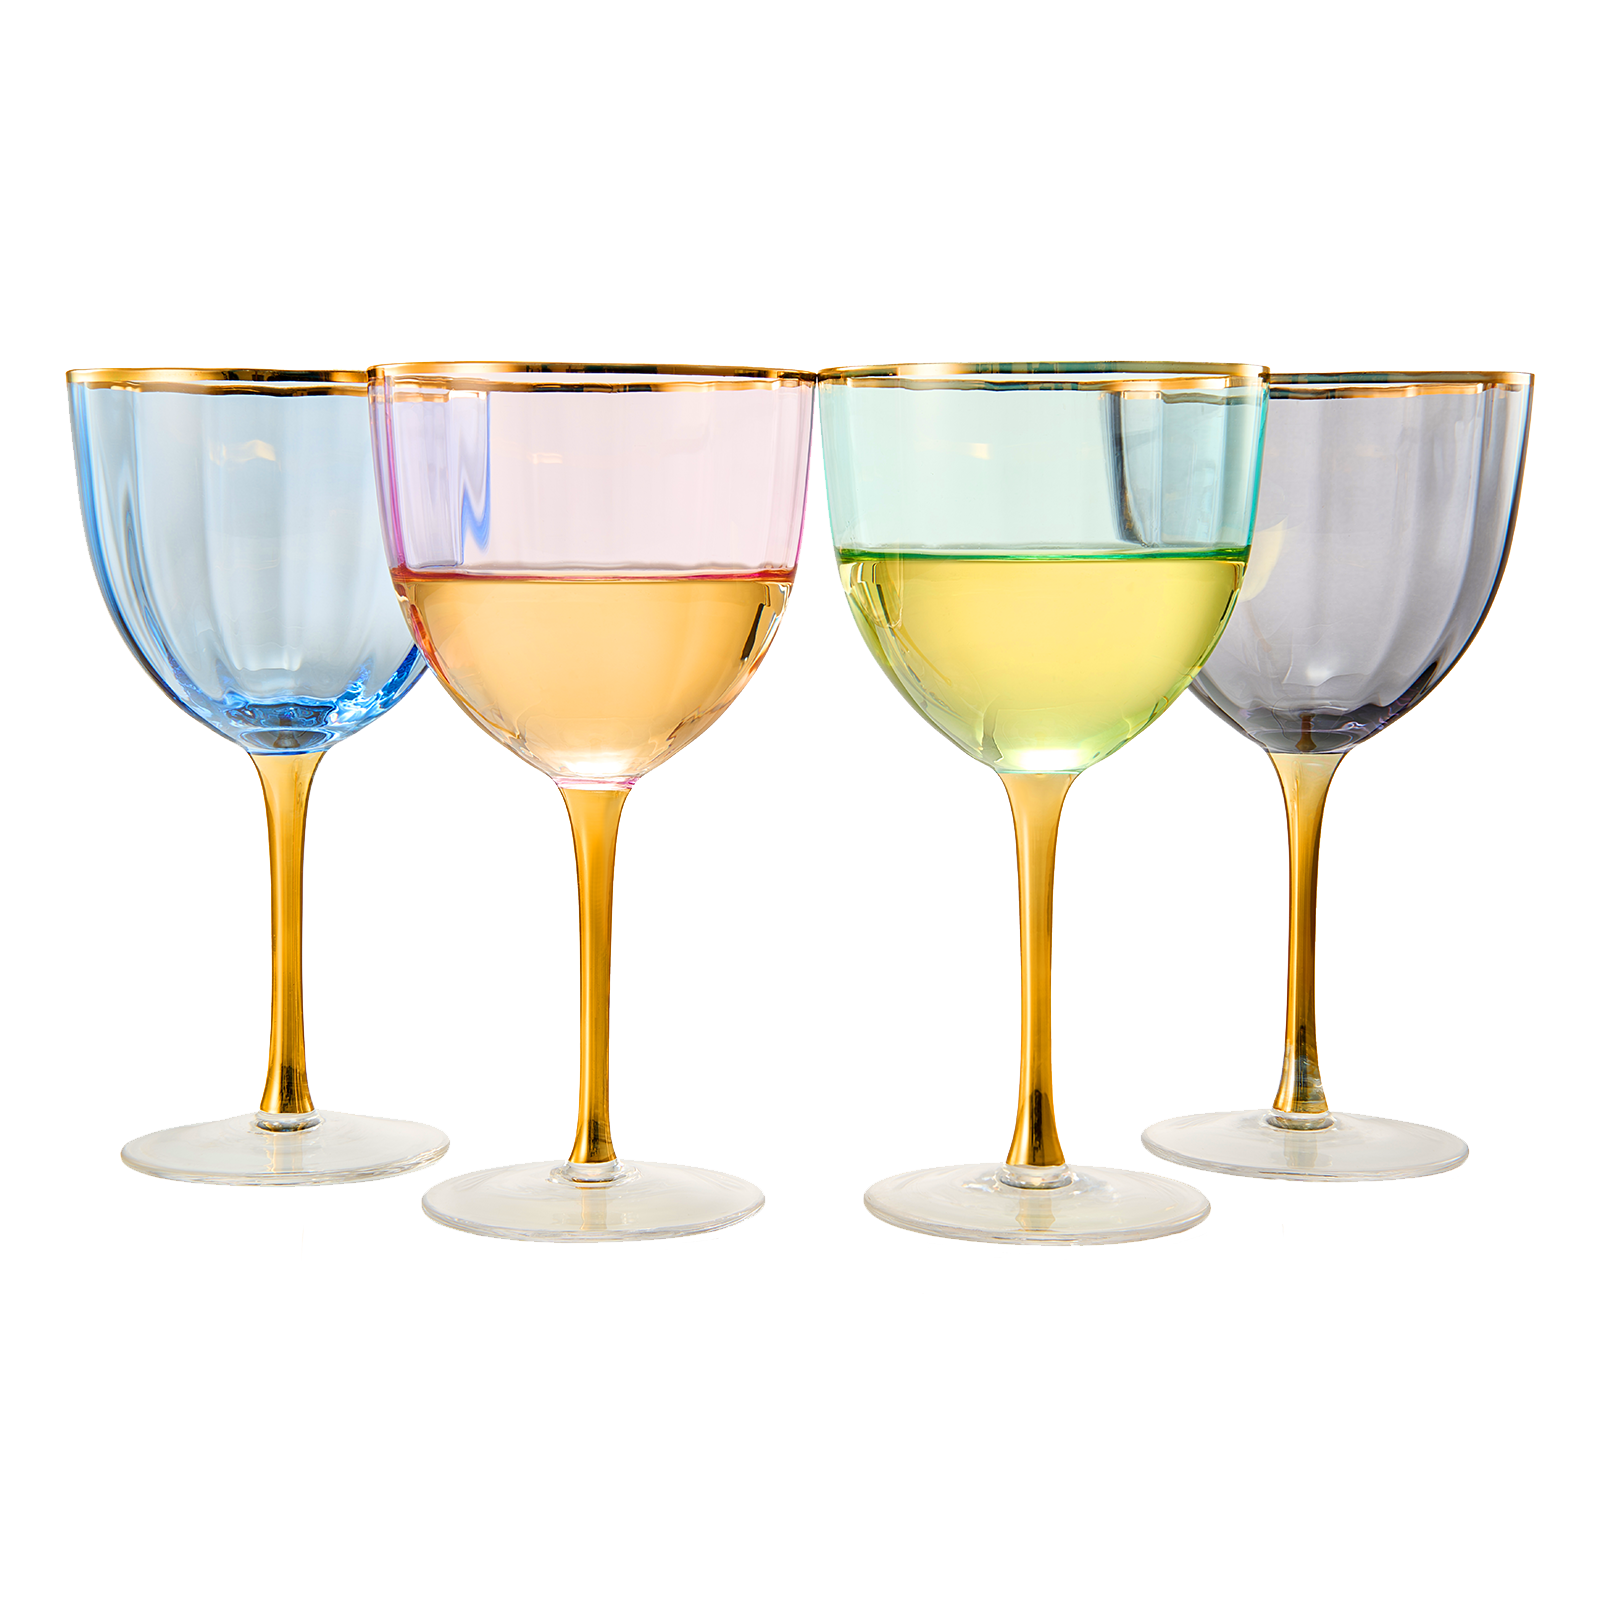 Vintage Crystal Wine Goblets, Set of 4 Large Glasses, Water Goblet